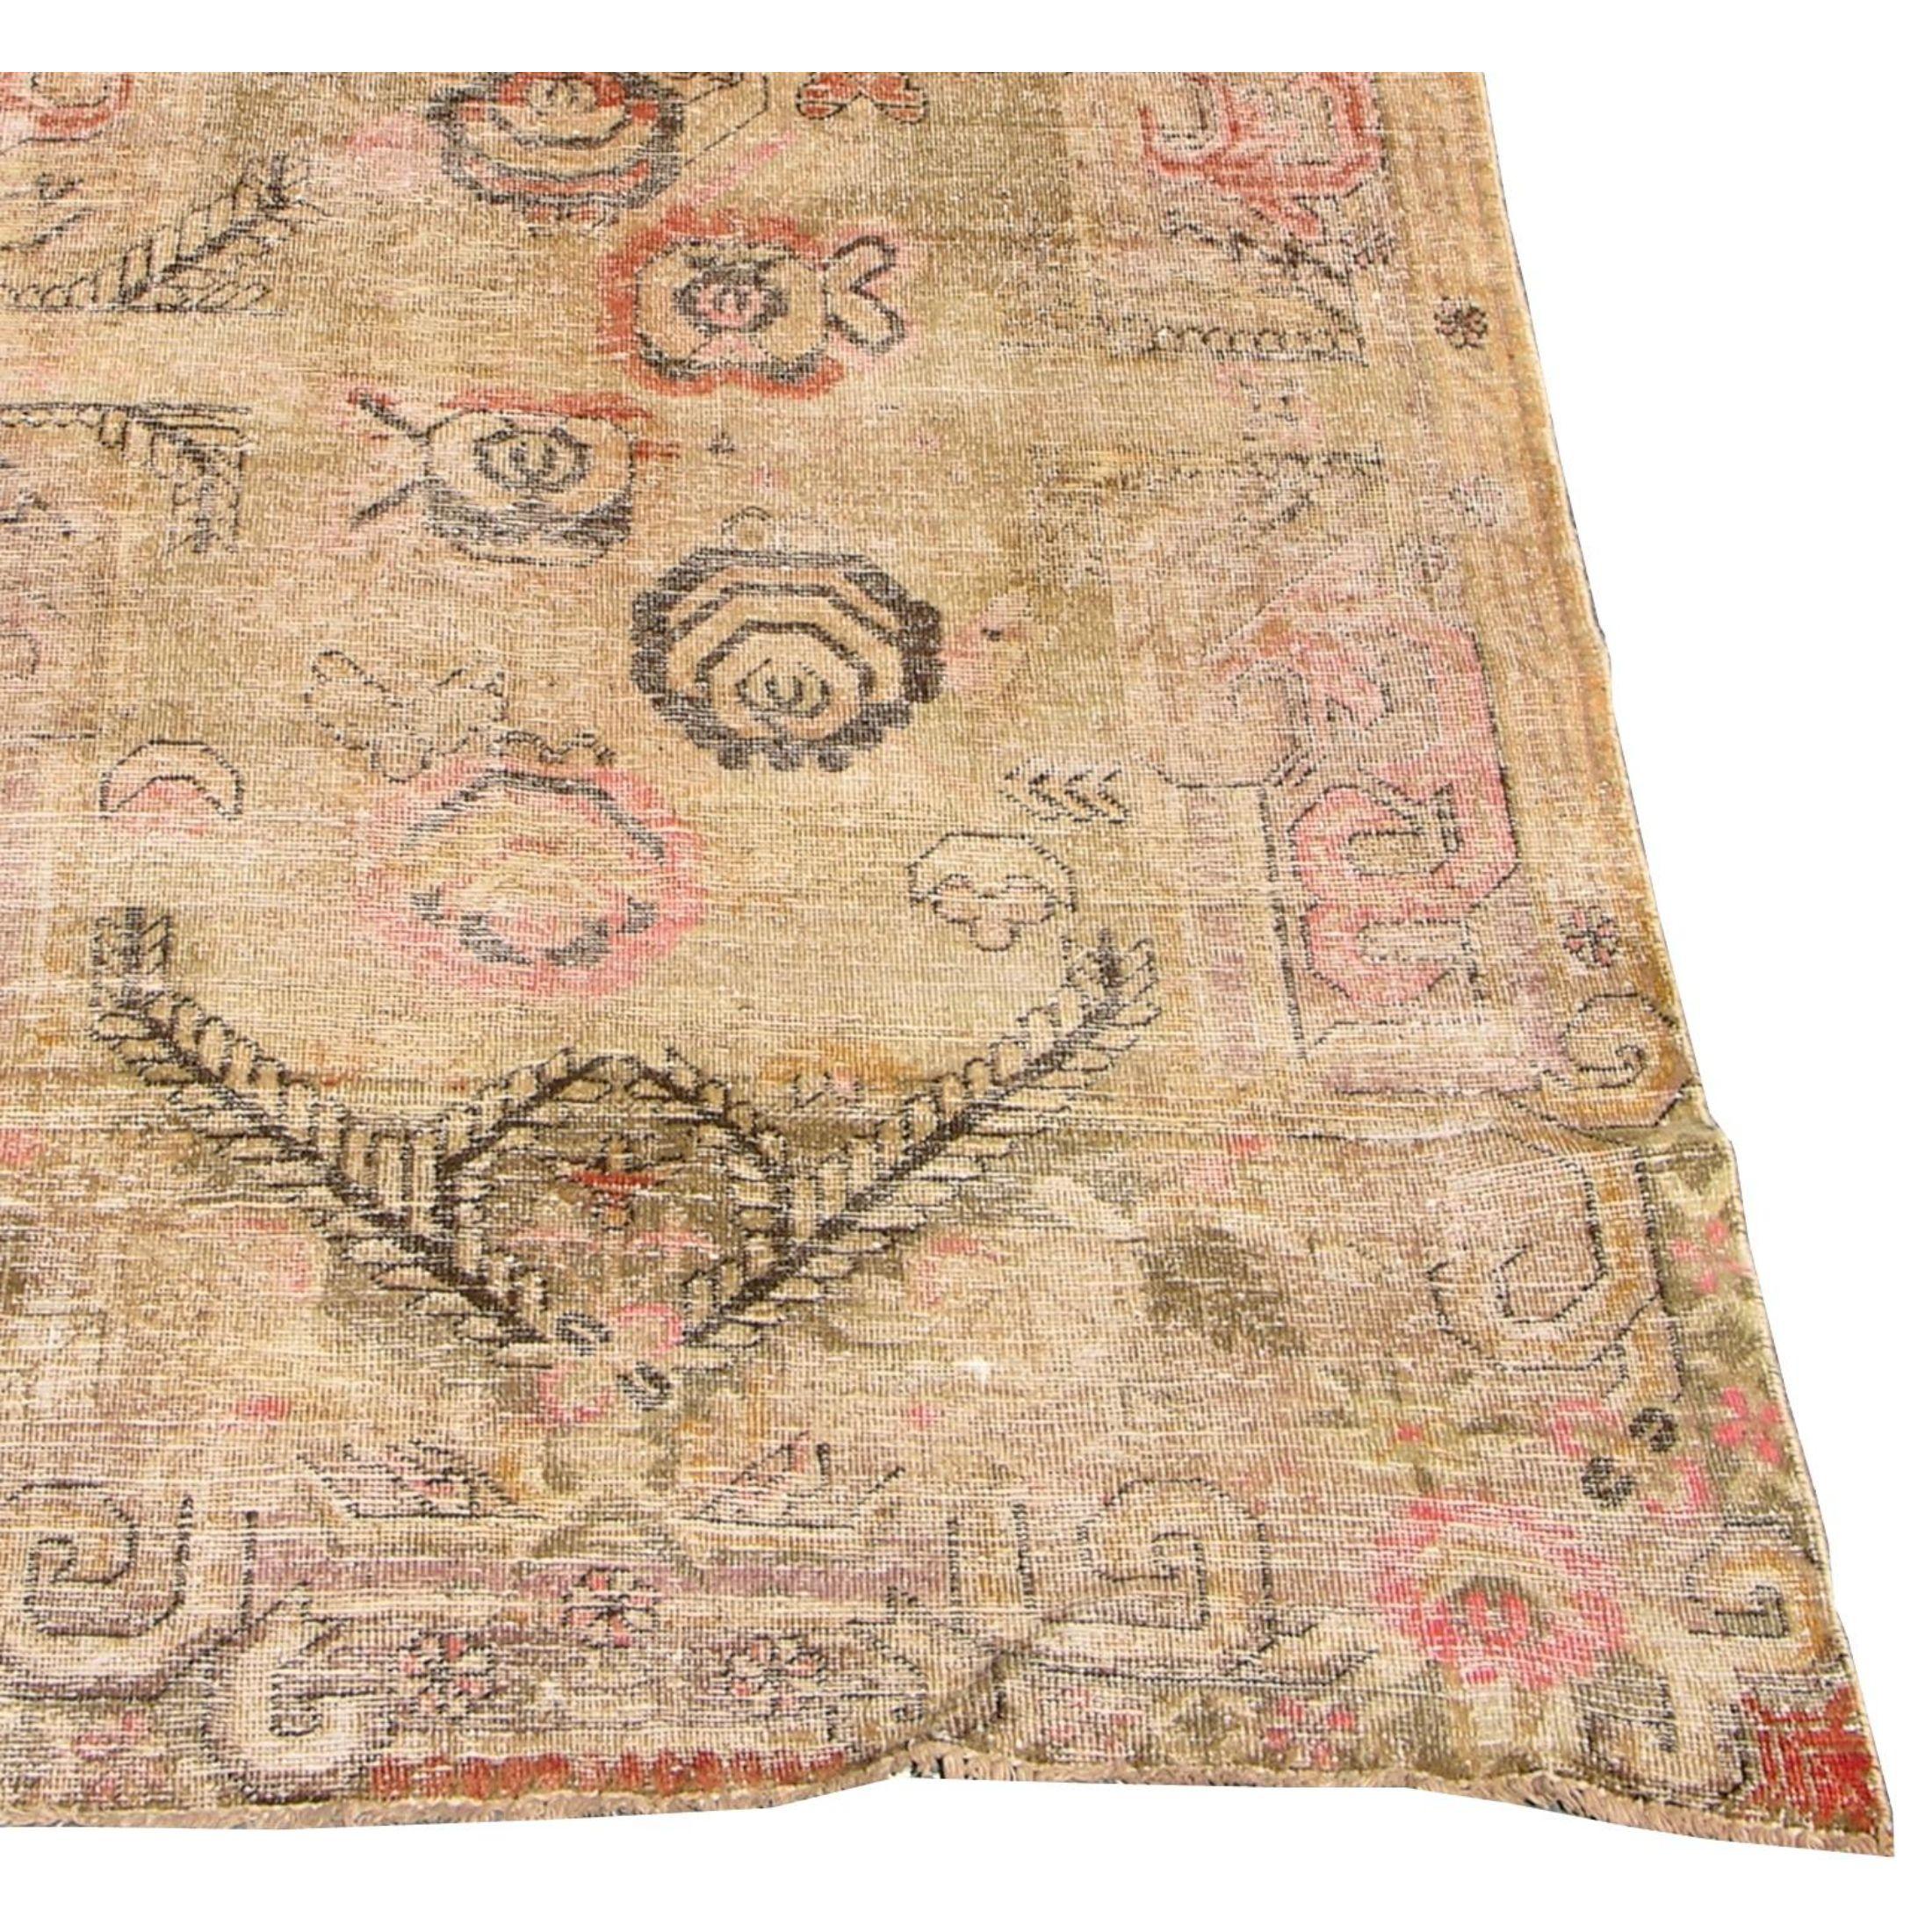 Zum Verkauf steht ein antiker Khotan-Samarkand-Teppich aus Usbekistan, etwa um 1900.